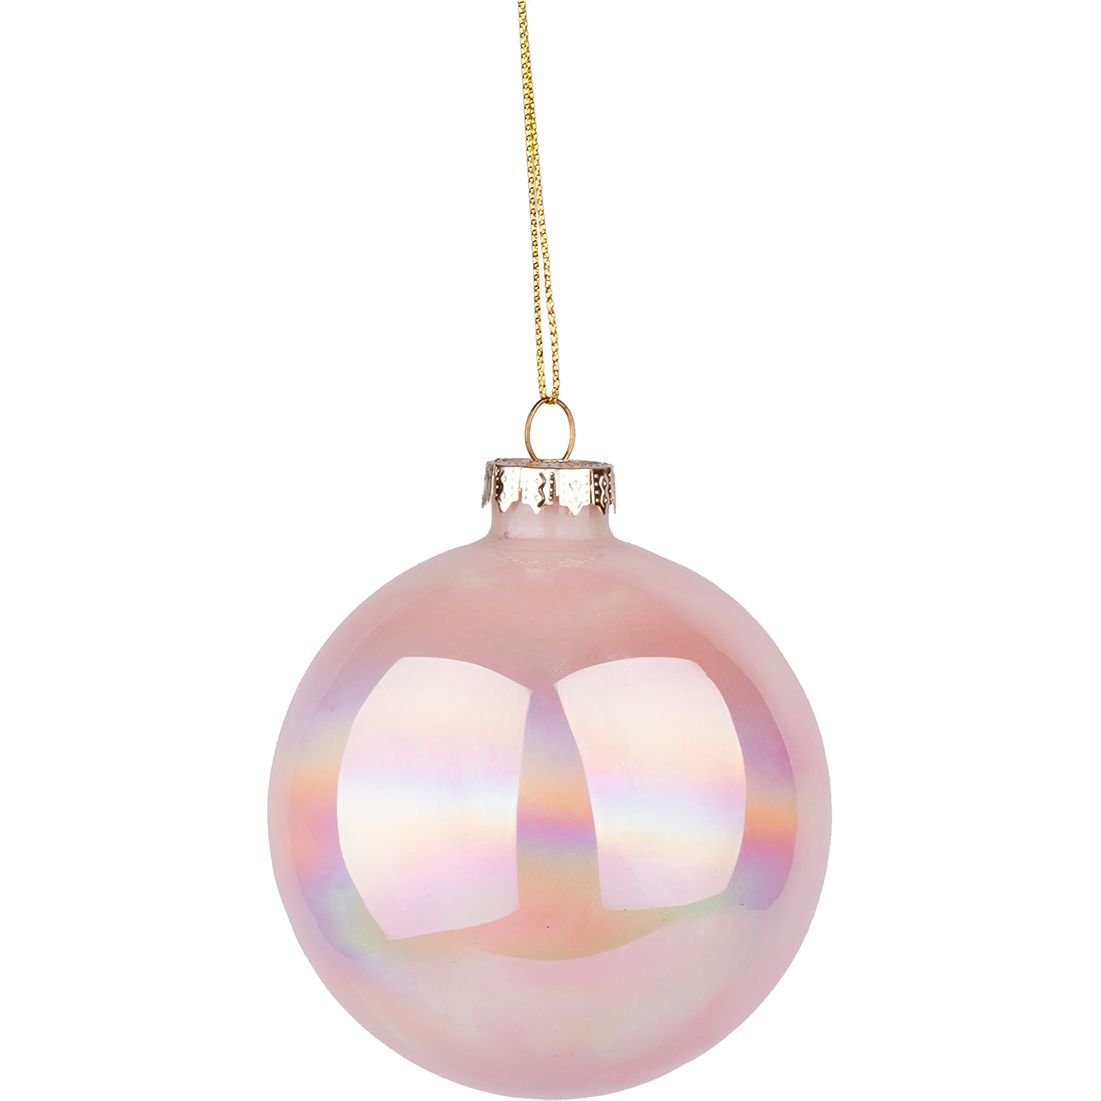 Новогодняя игрушка Novogod'ko Шар 12 cм глянцевая мраморная светло-розовая (973828) - фото 1